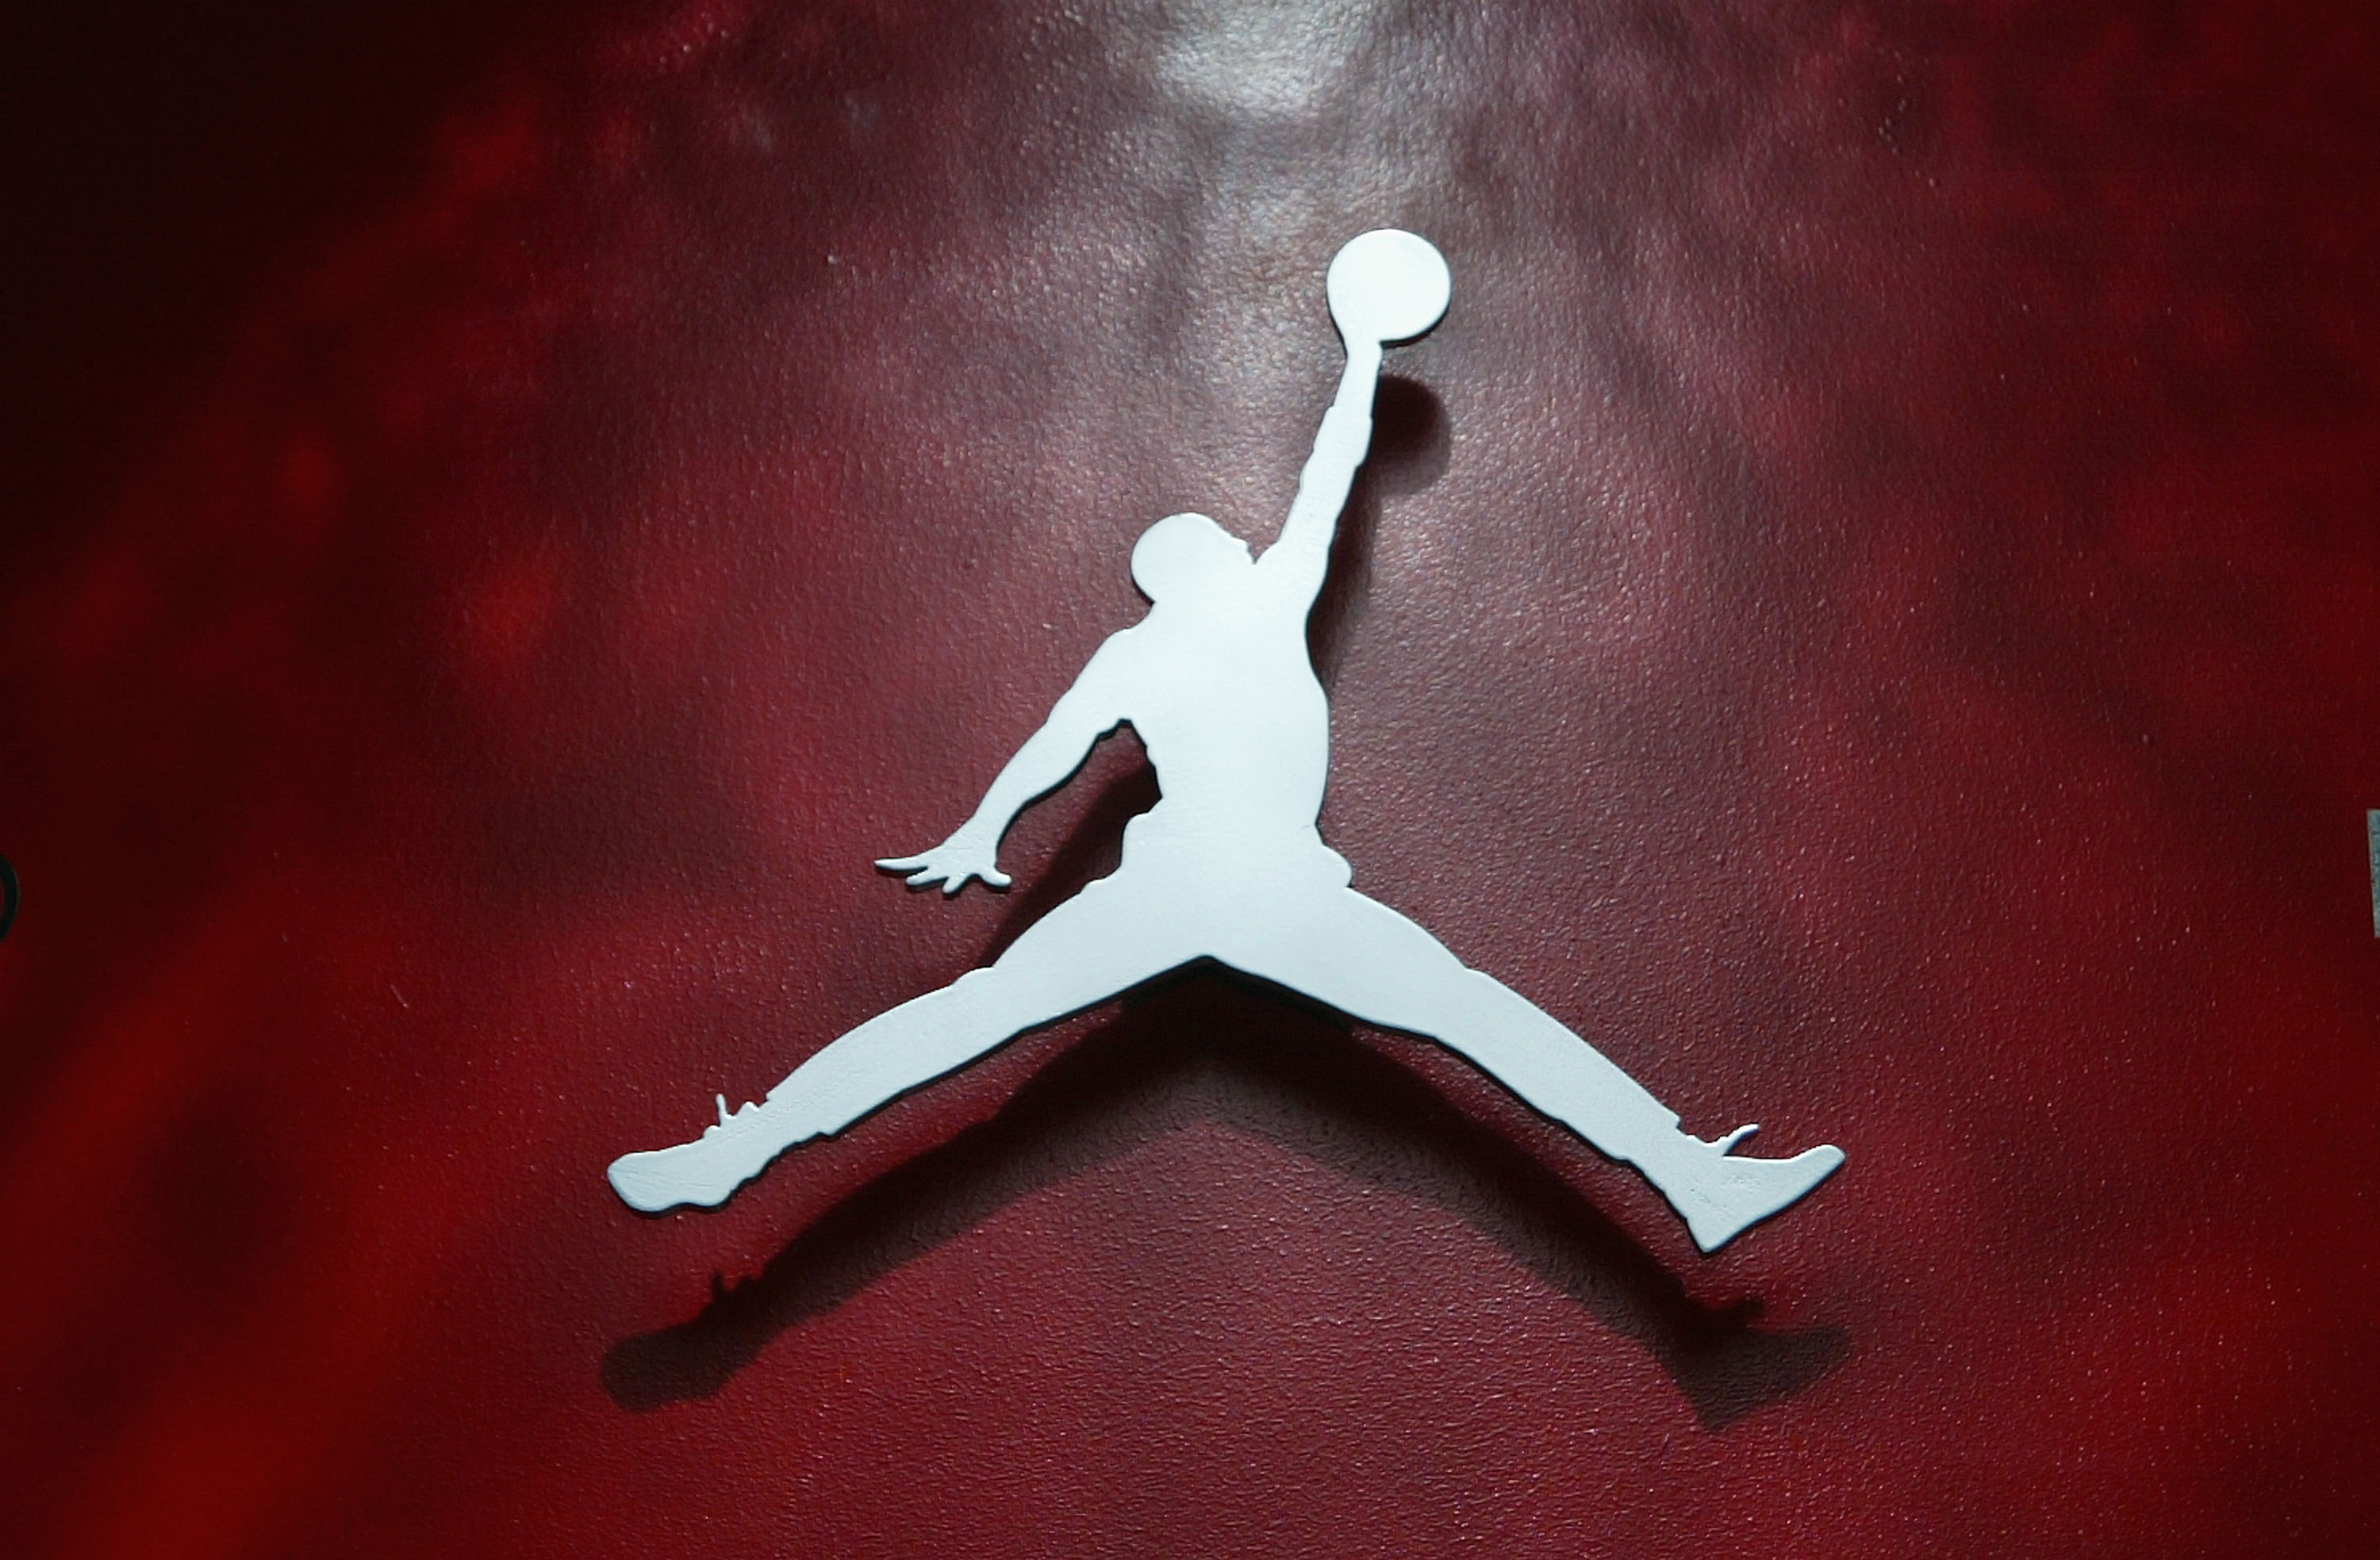 Air Jordan 5 “Olive” Set To Return: Details